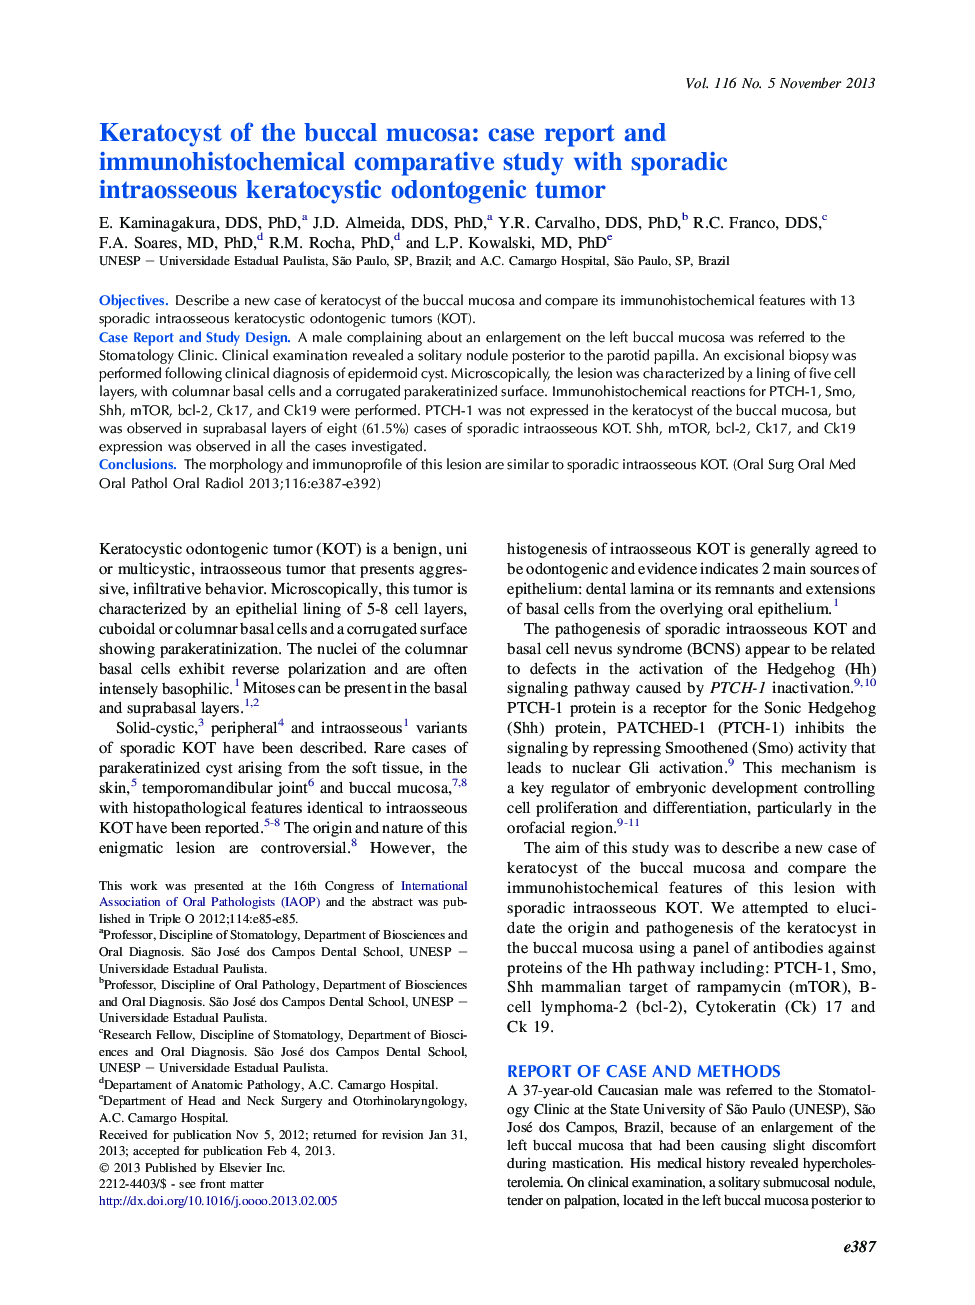 کراتوسیست مخاط مخاطی: گزارش مورد و بررسی مقایسه ای ایمونوهیستوشیمی با تومور ادنتوژنیک کراتوسیستی پراکنده 